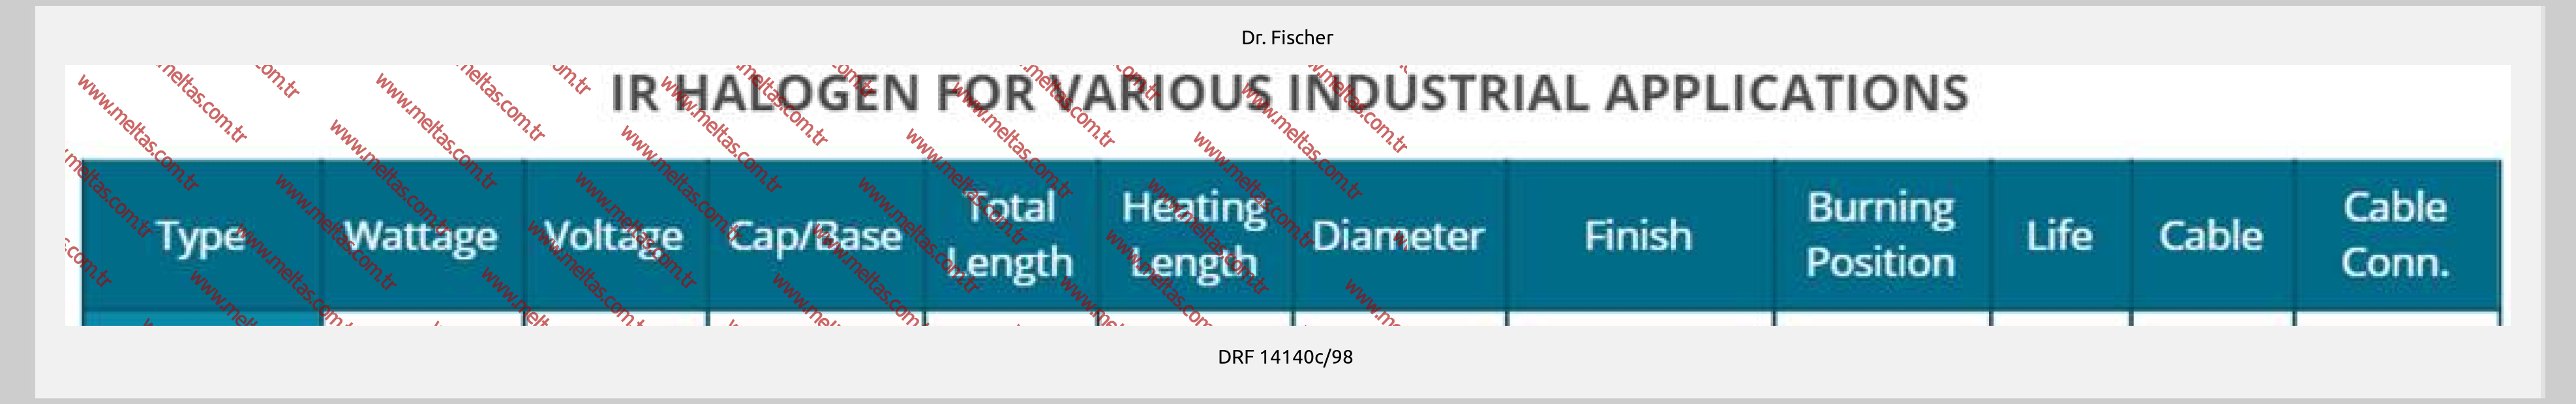 Dr. Fischer-DRF 14140c/98 